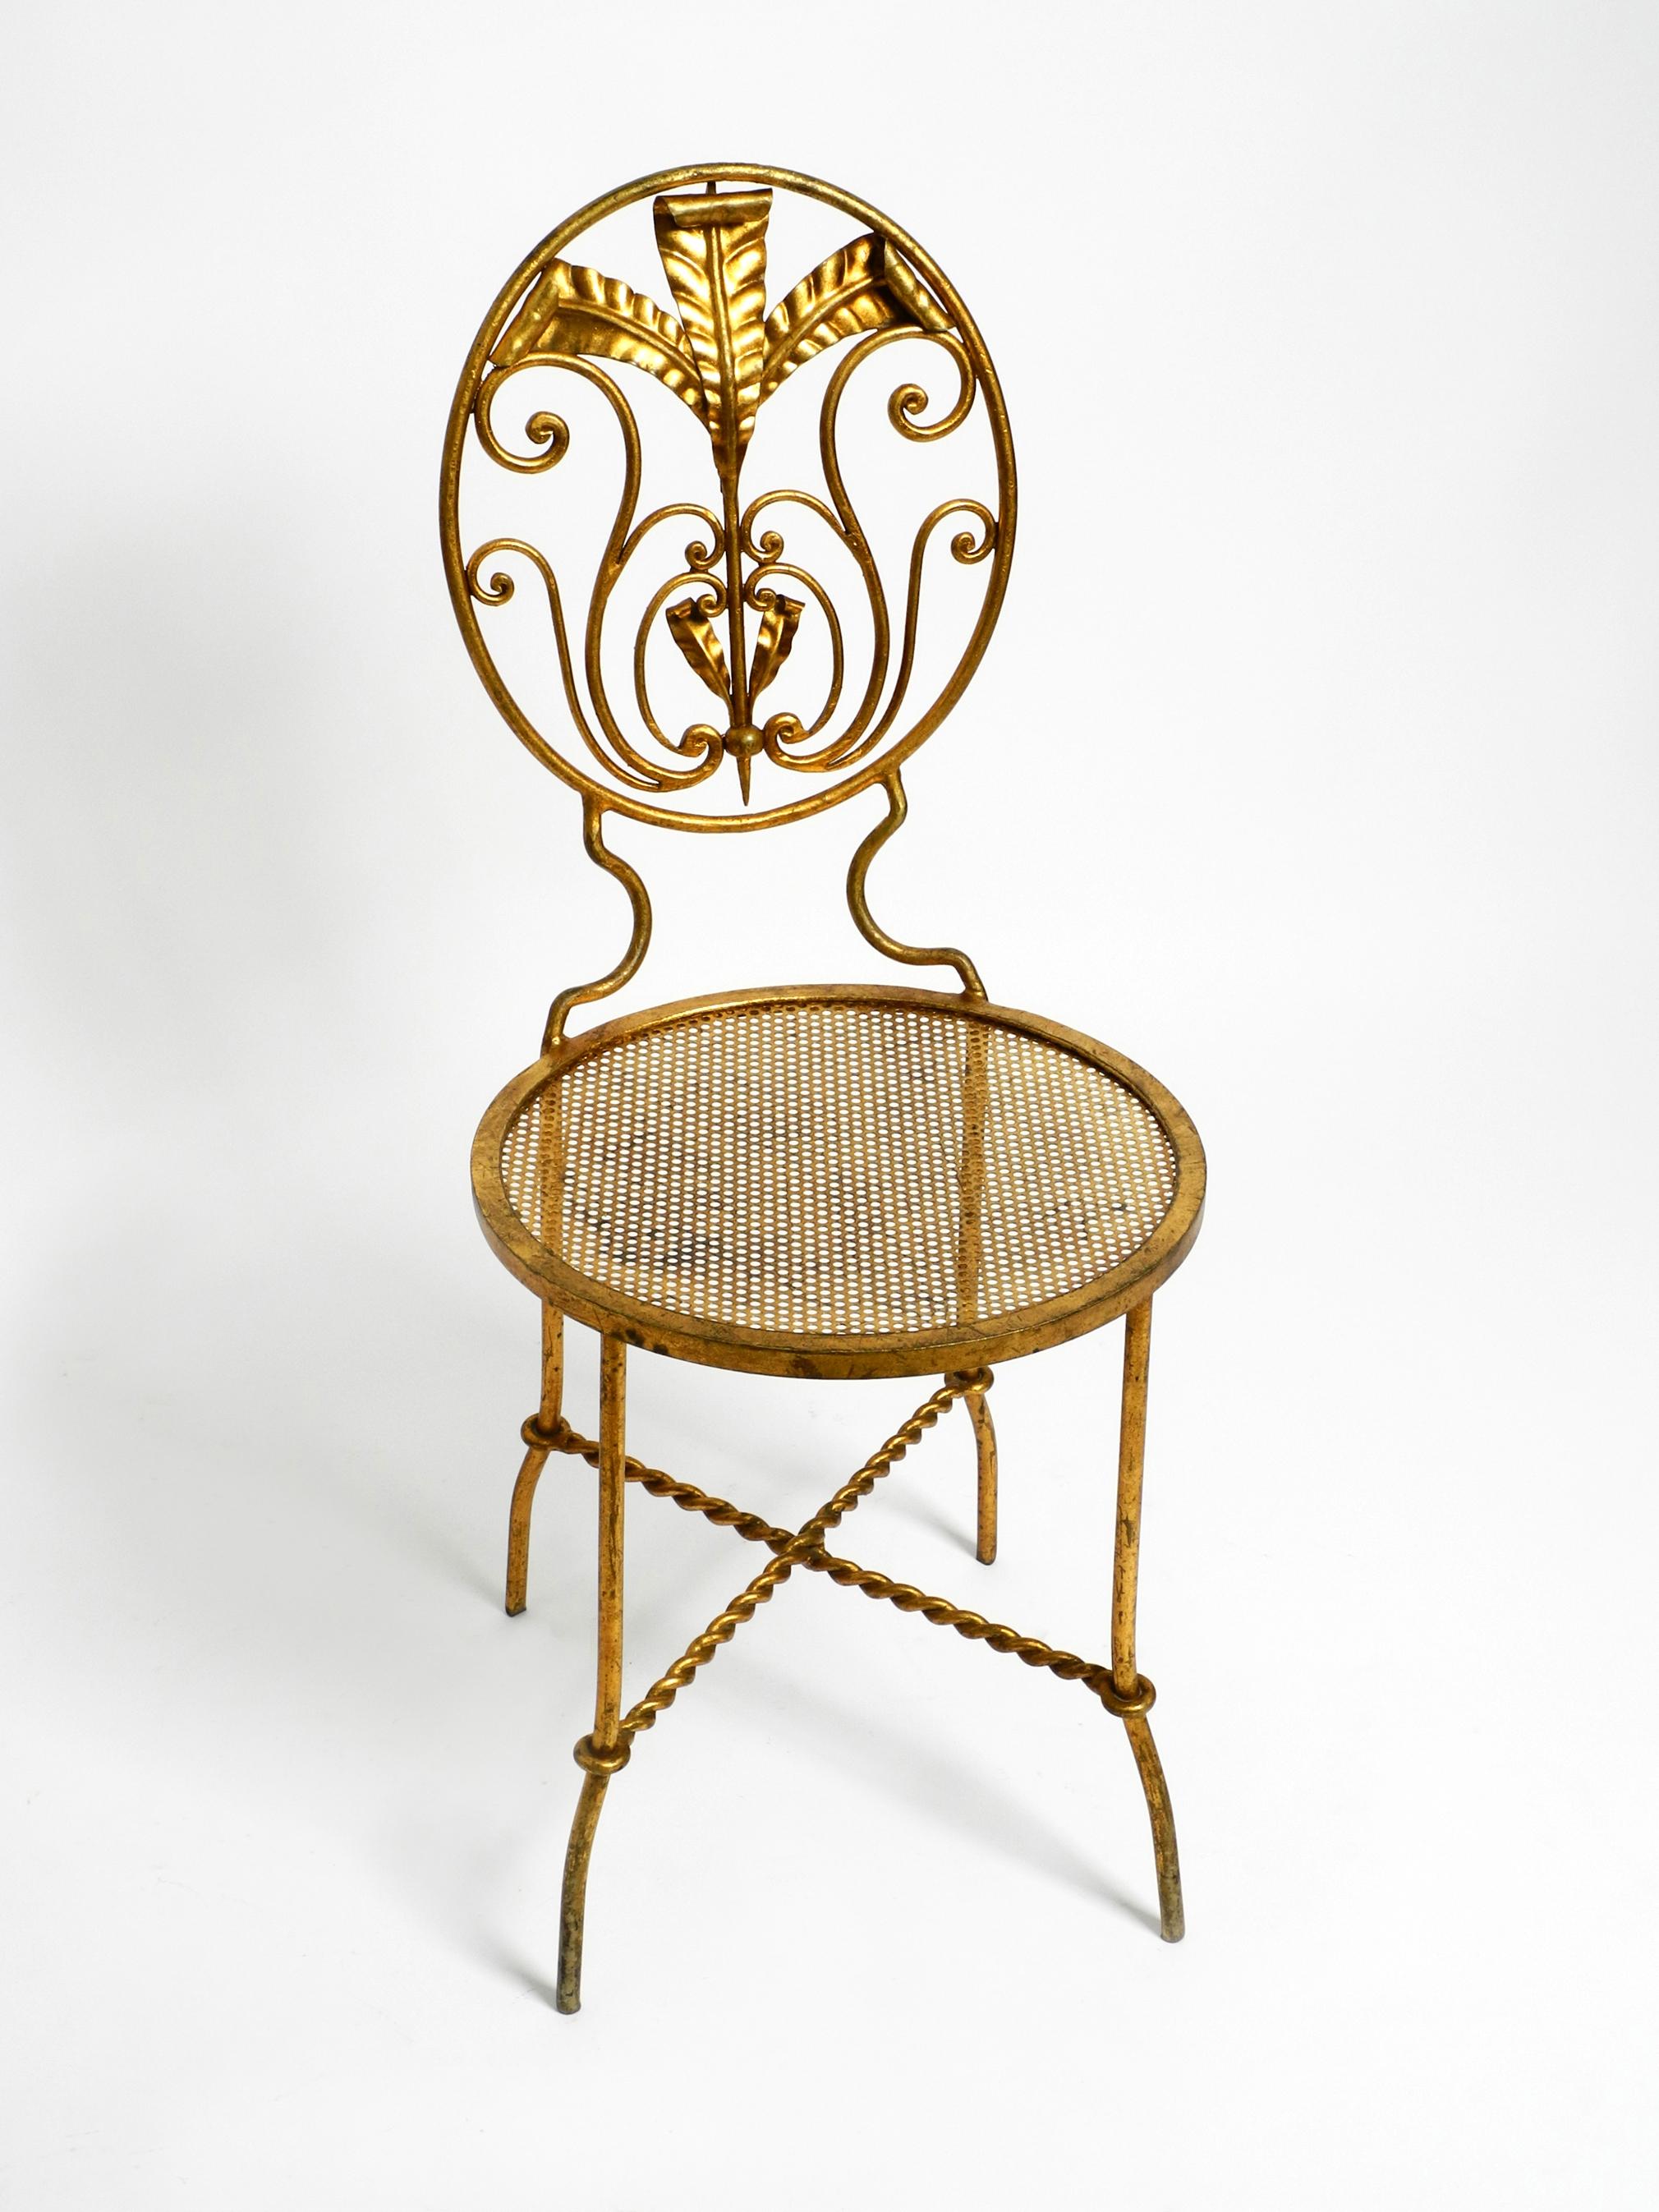 Schöne 1970er Regency Design vergoldet geschmiedet und gedreht Eisen dekorative florentine Stuhl.
Tolles, aufwändiges Design mit traumhafter Patina. Hergestellt in Italien.
Sehr gut erhalten, ohne Schäden und nicht wackelig. Alle Teile sind